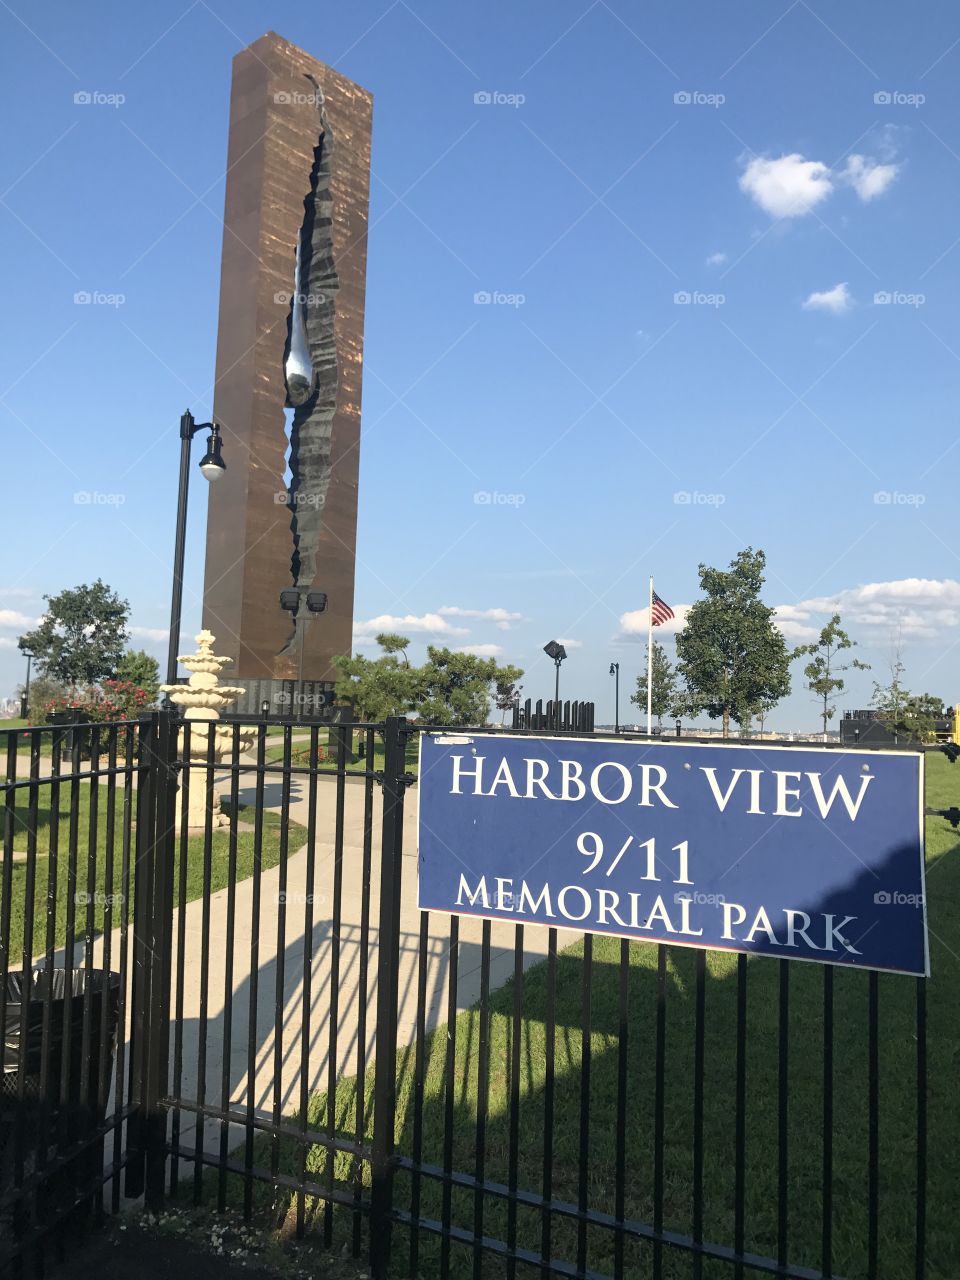 Harbor view Memorial Park